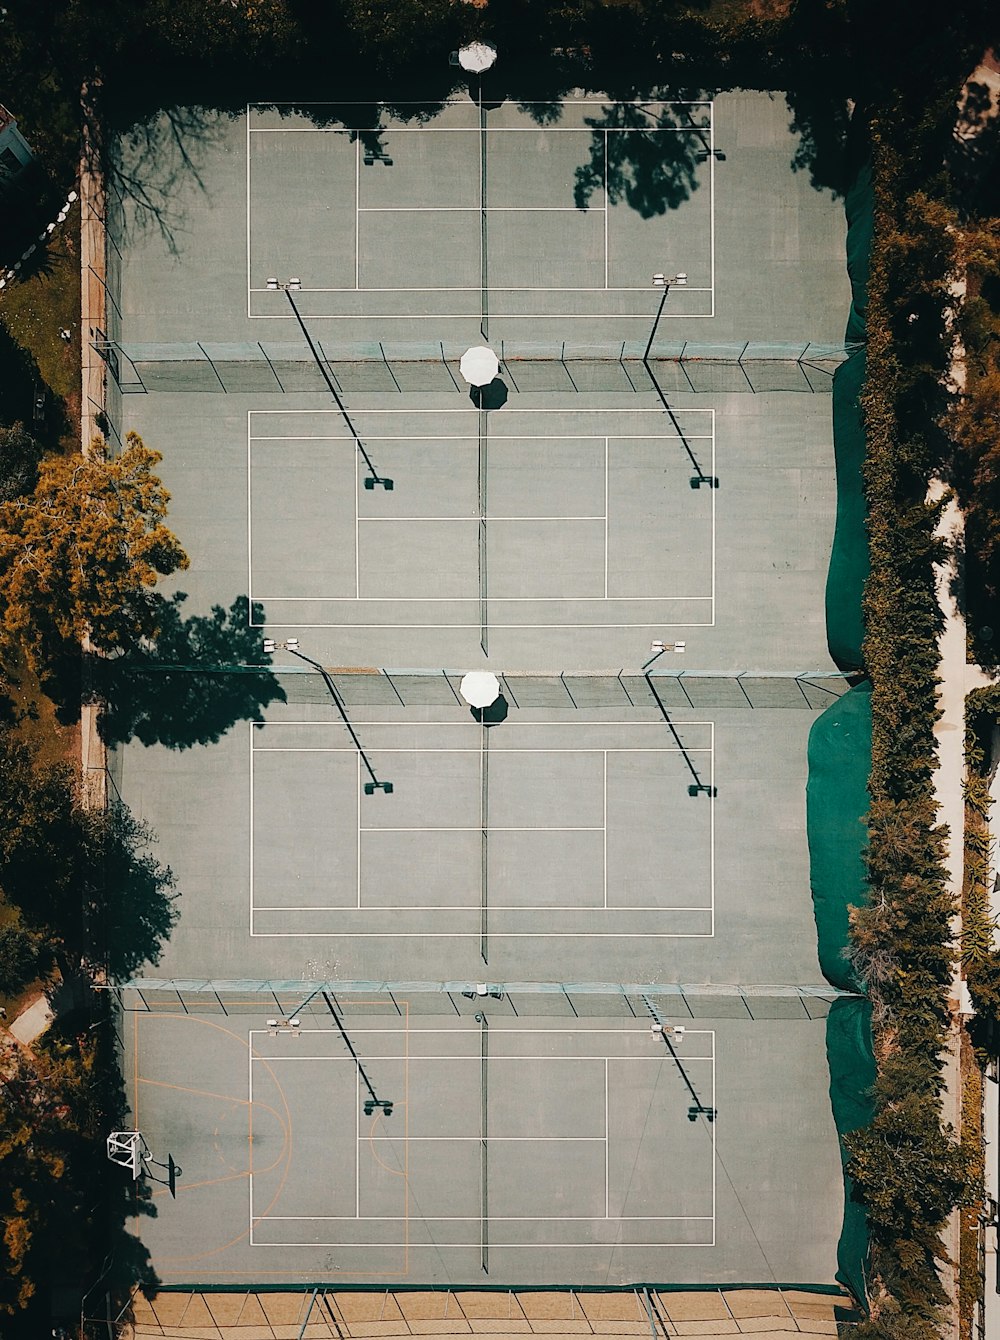 Photographie aérienne d’un terrain de jeu entouré d’orangers